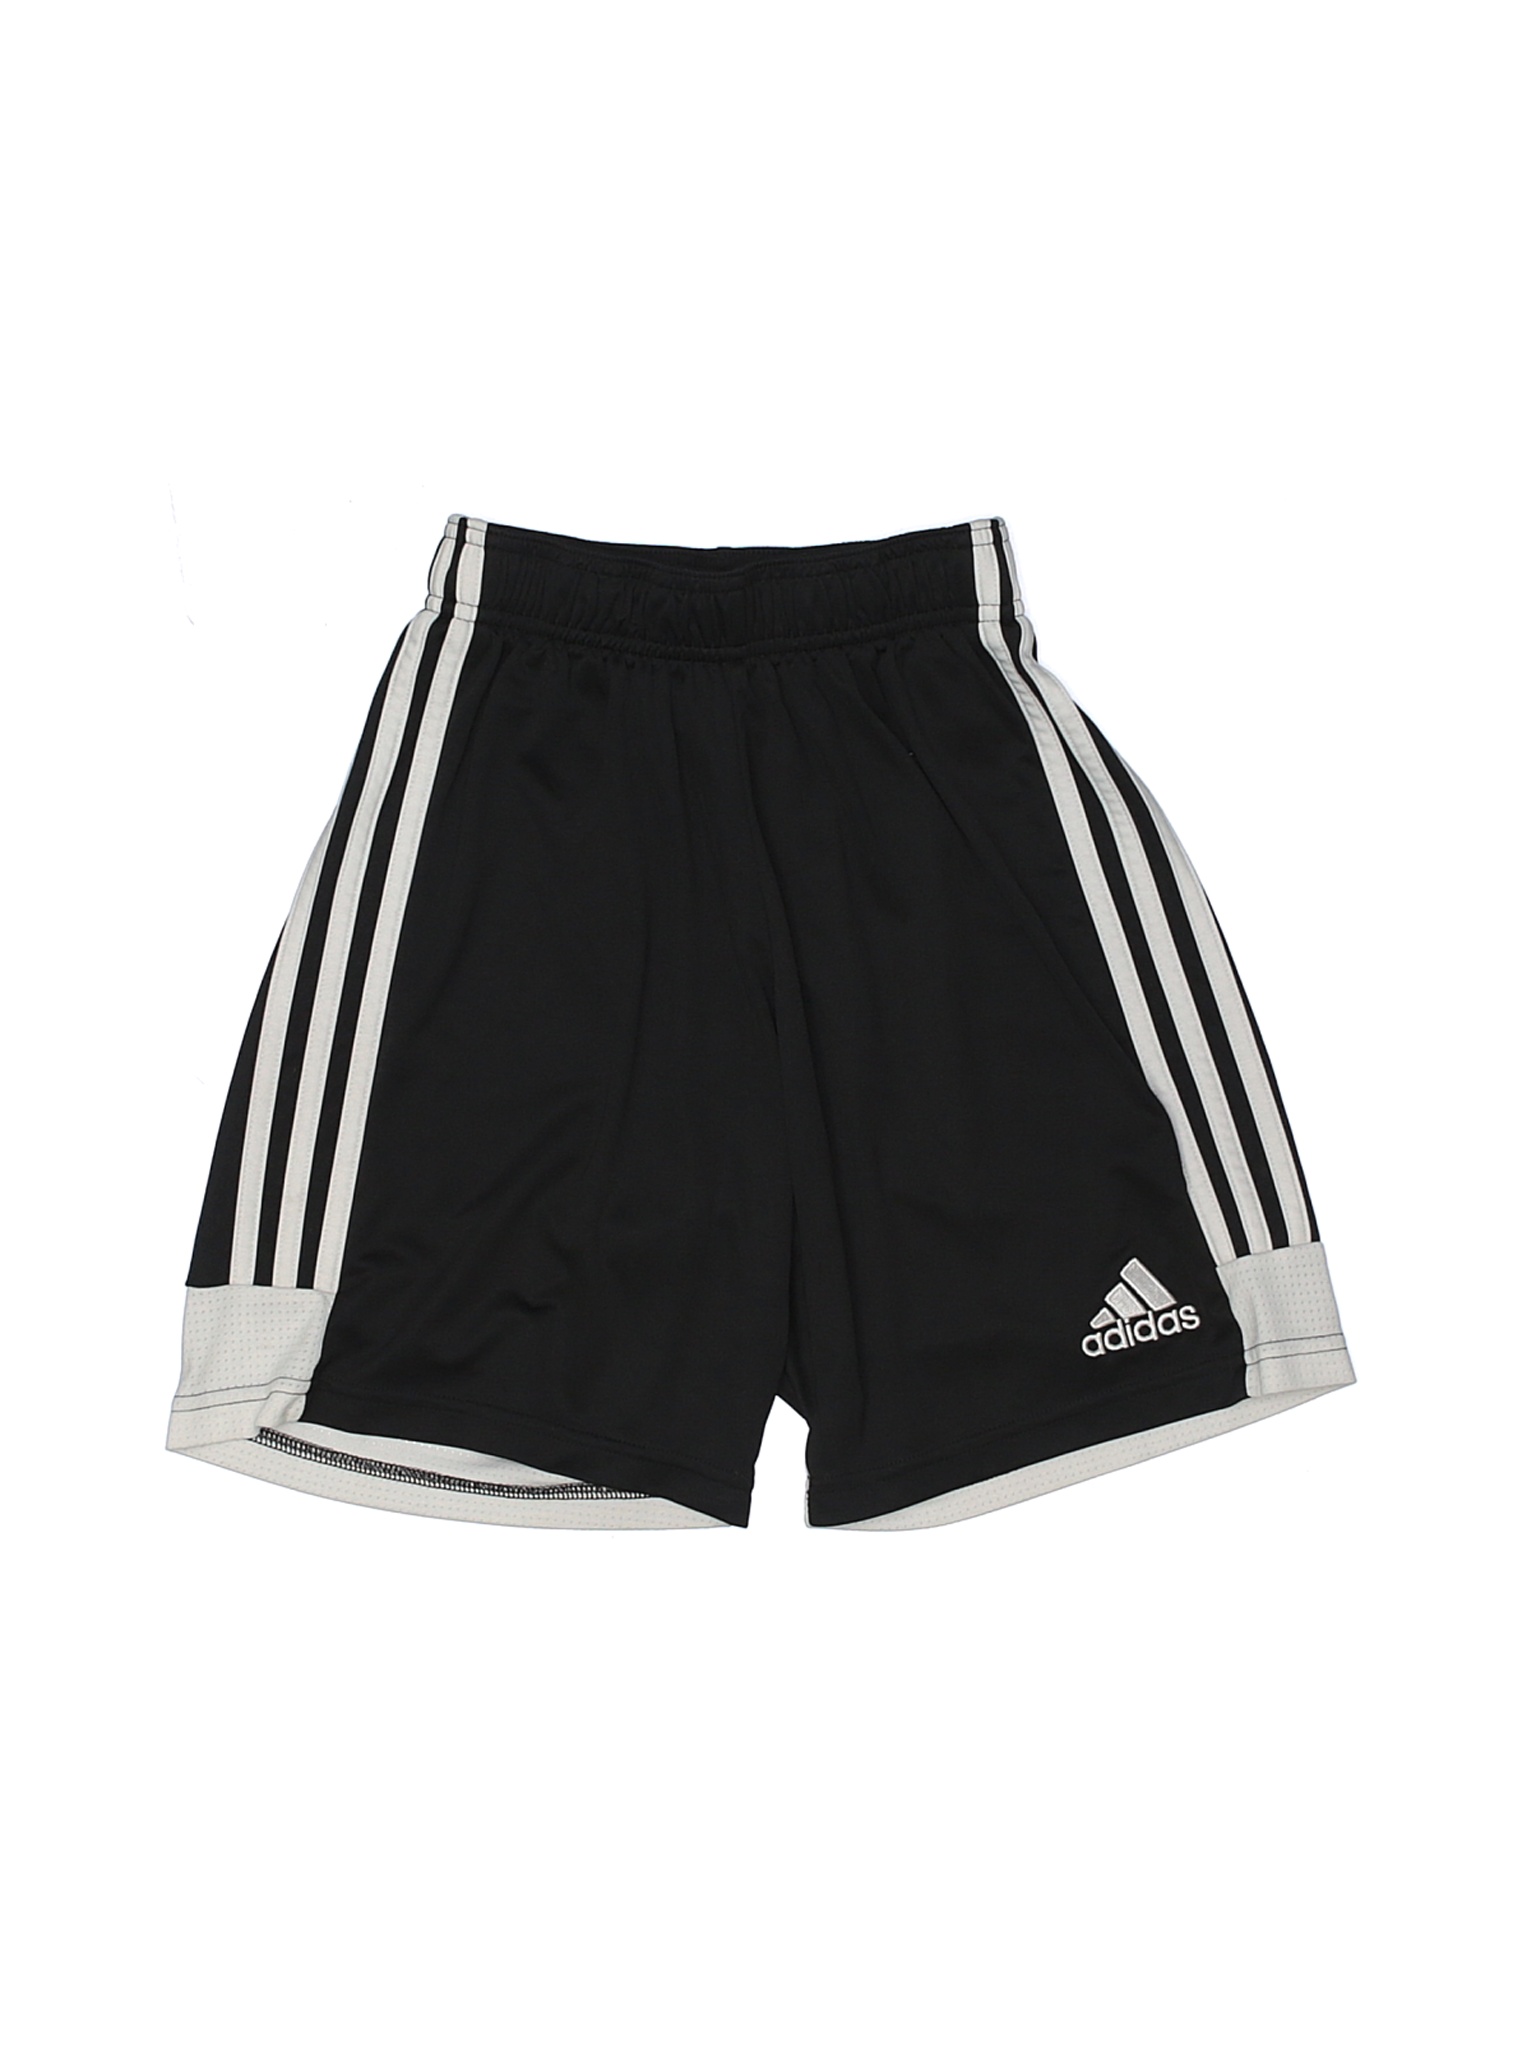 Adidas Girls Black Athletic Shorts XS Youth | eBay